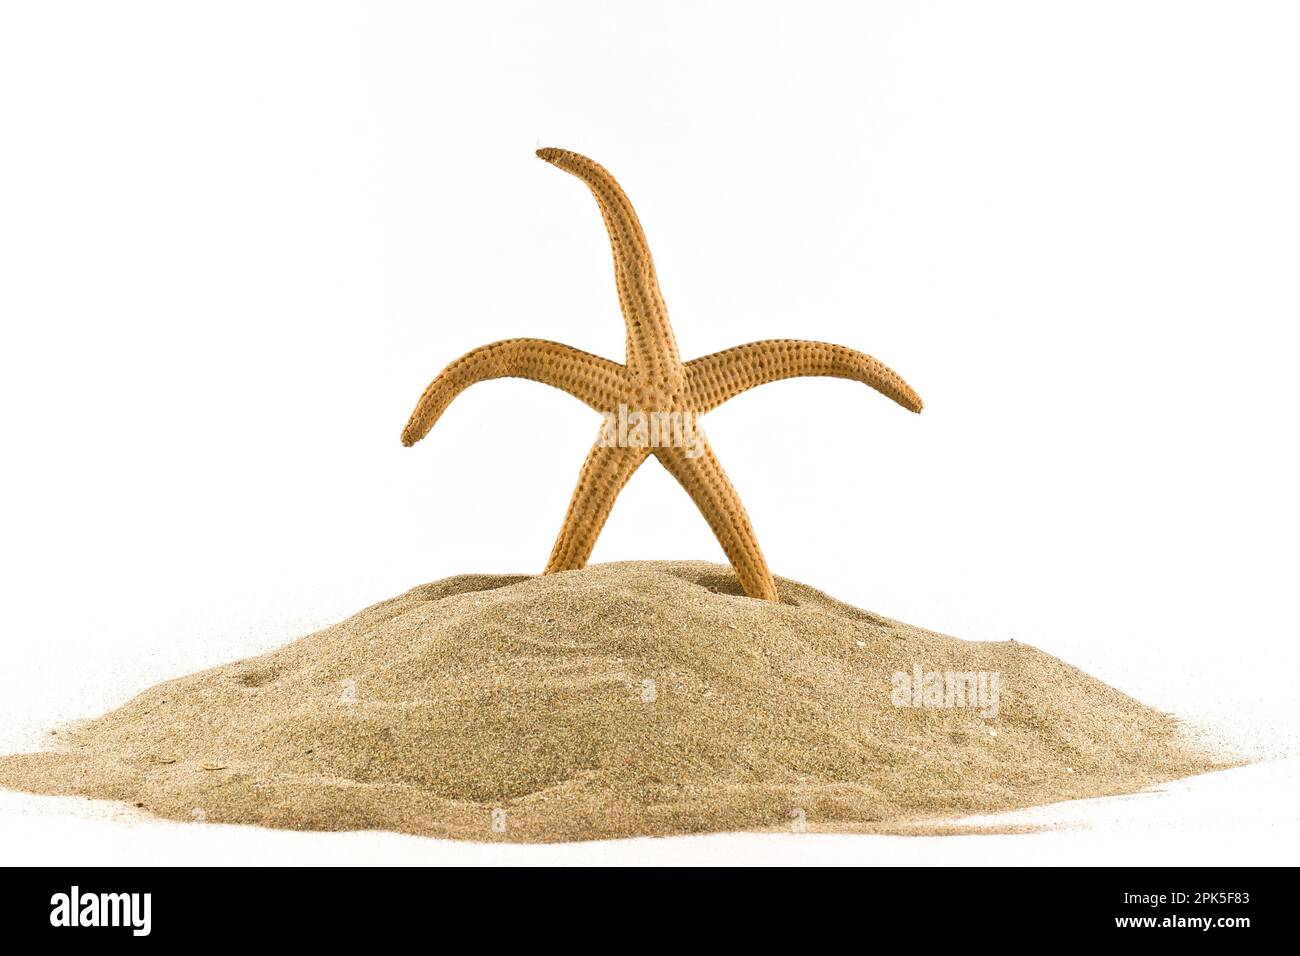 Seesterne stehen im Sand mit leeren Muscheln und Seeigel, sonnige Stimmung mit weißem Hintergrund. Stockfoto